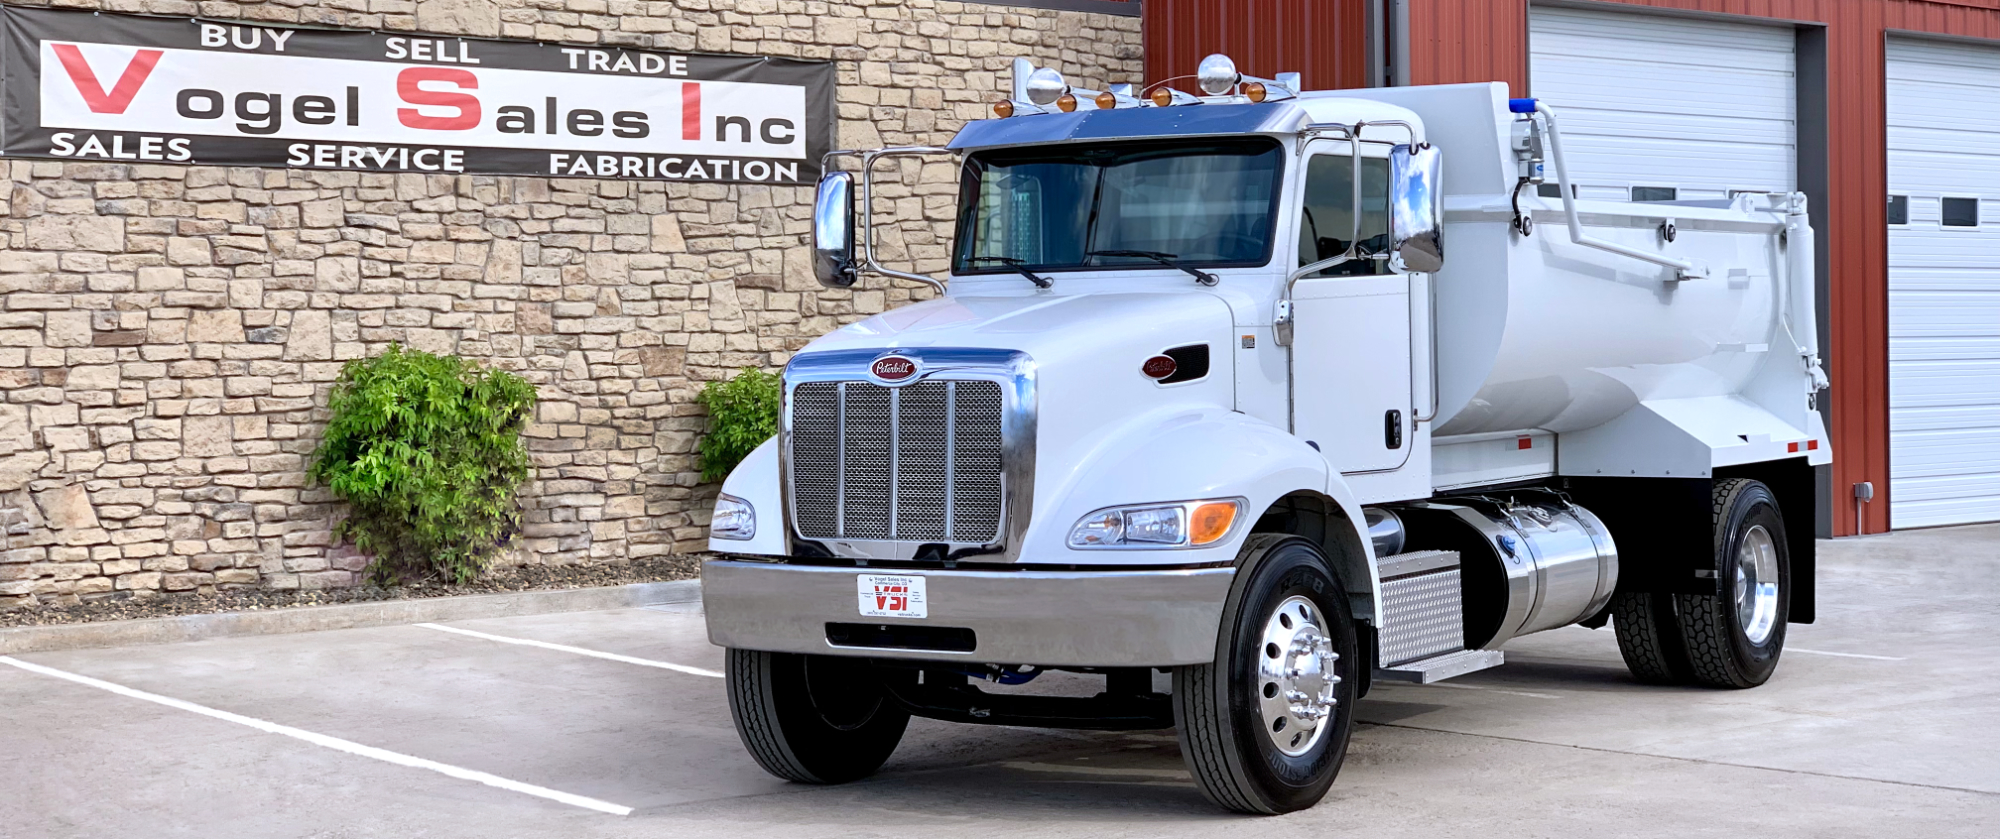 Vogel Sales Inc - VSI Trucks. About Us., Commerce City, Colorado